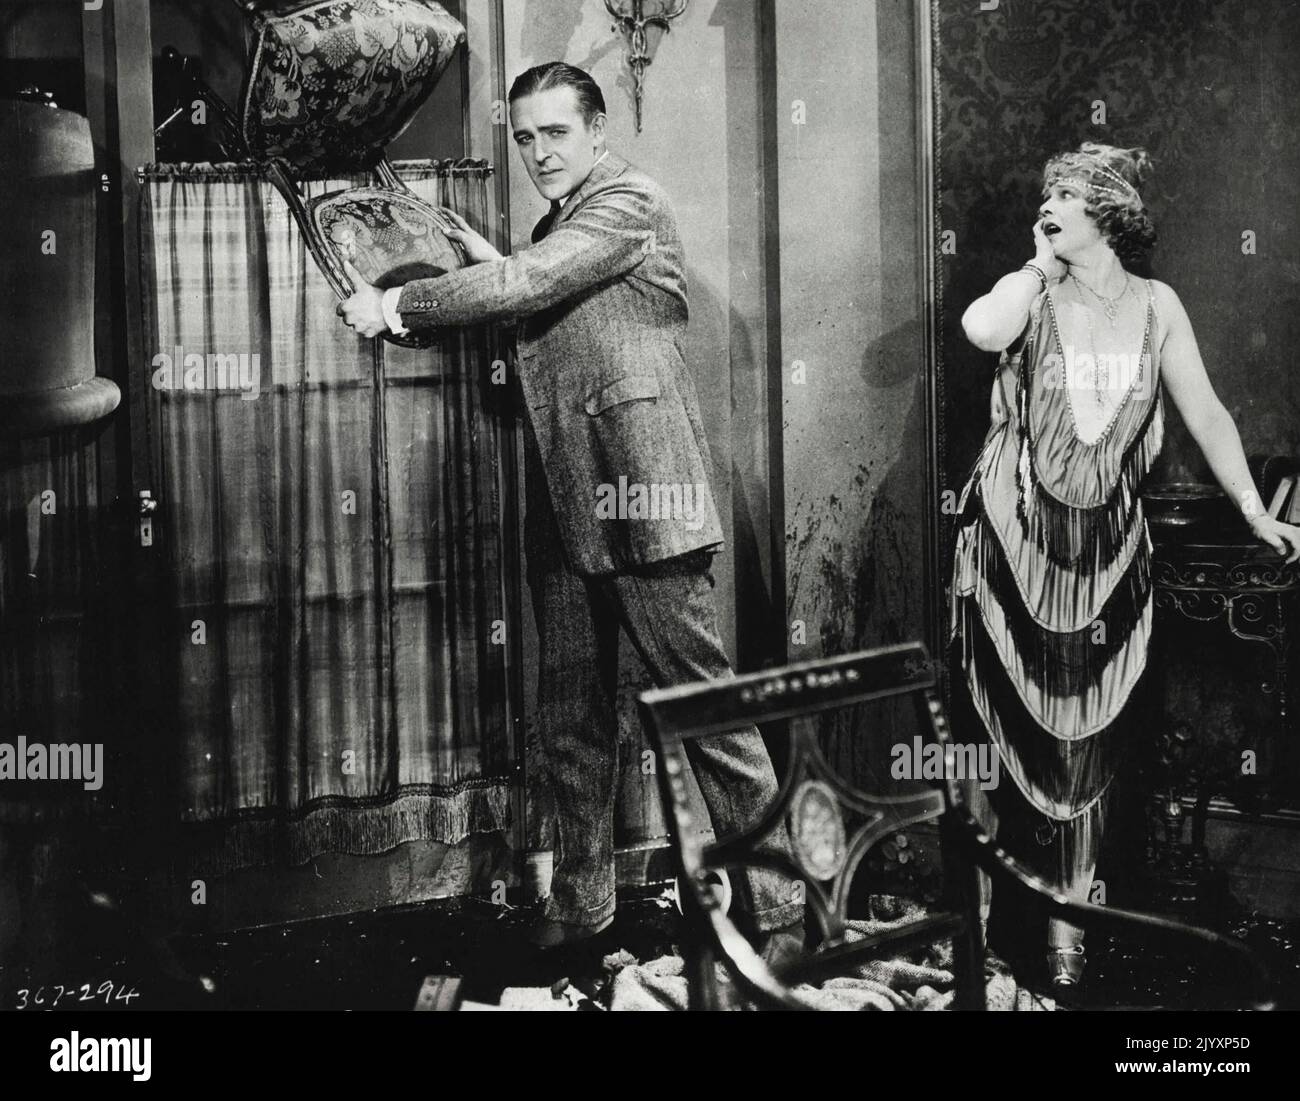 Hollywood (unzensiert) unter den größten Stars aller Zeiten. Wallace Reid. Wallace Reid - drogenabhängig. 8. Oktober 1950. (Foto vom Register und Tribune Syndicate) Stockfoto